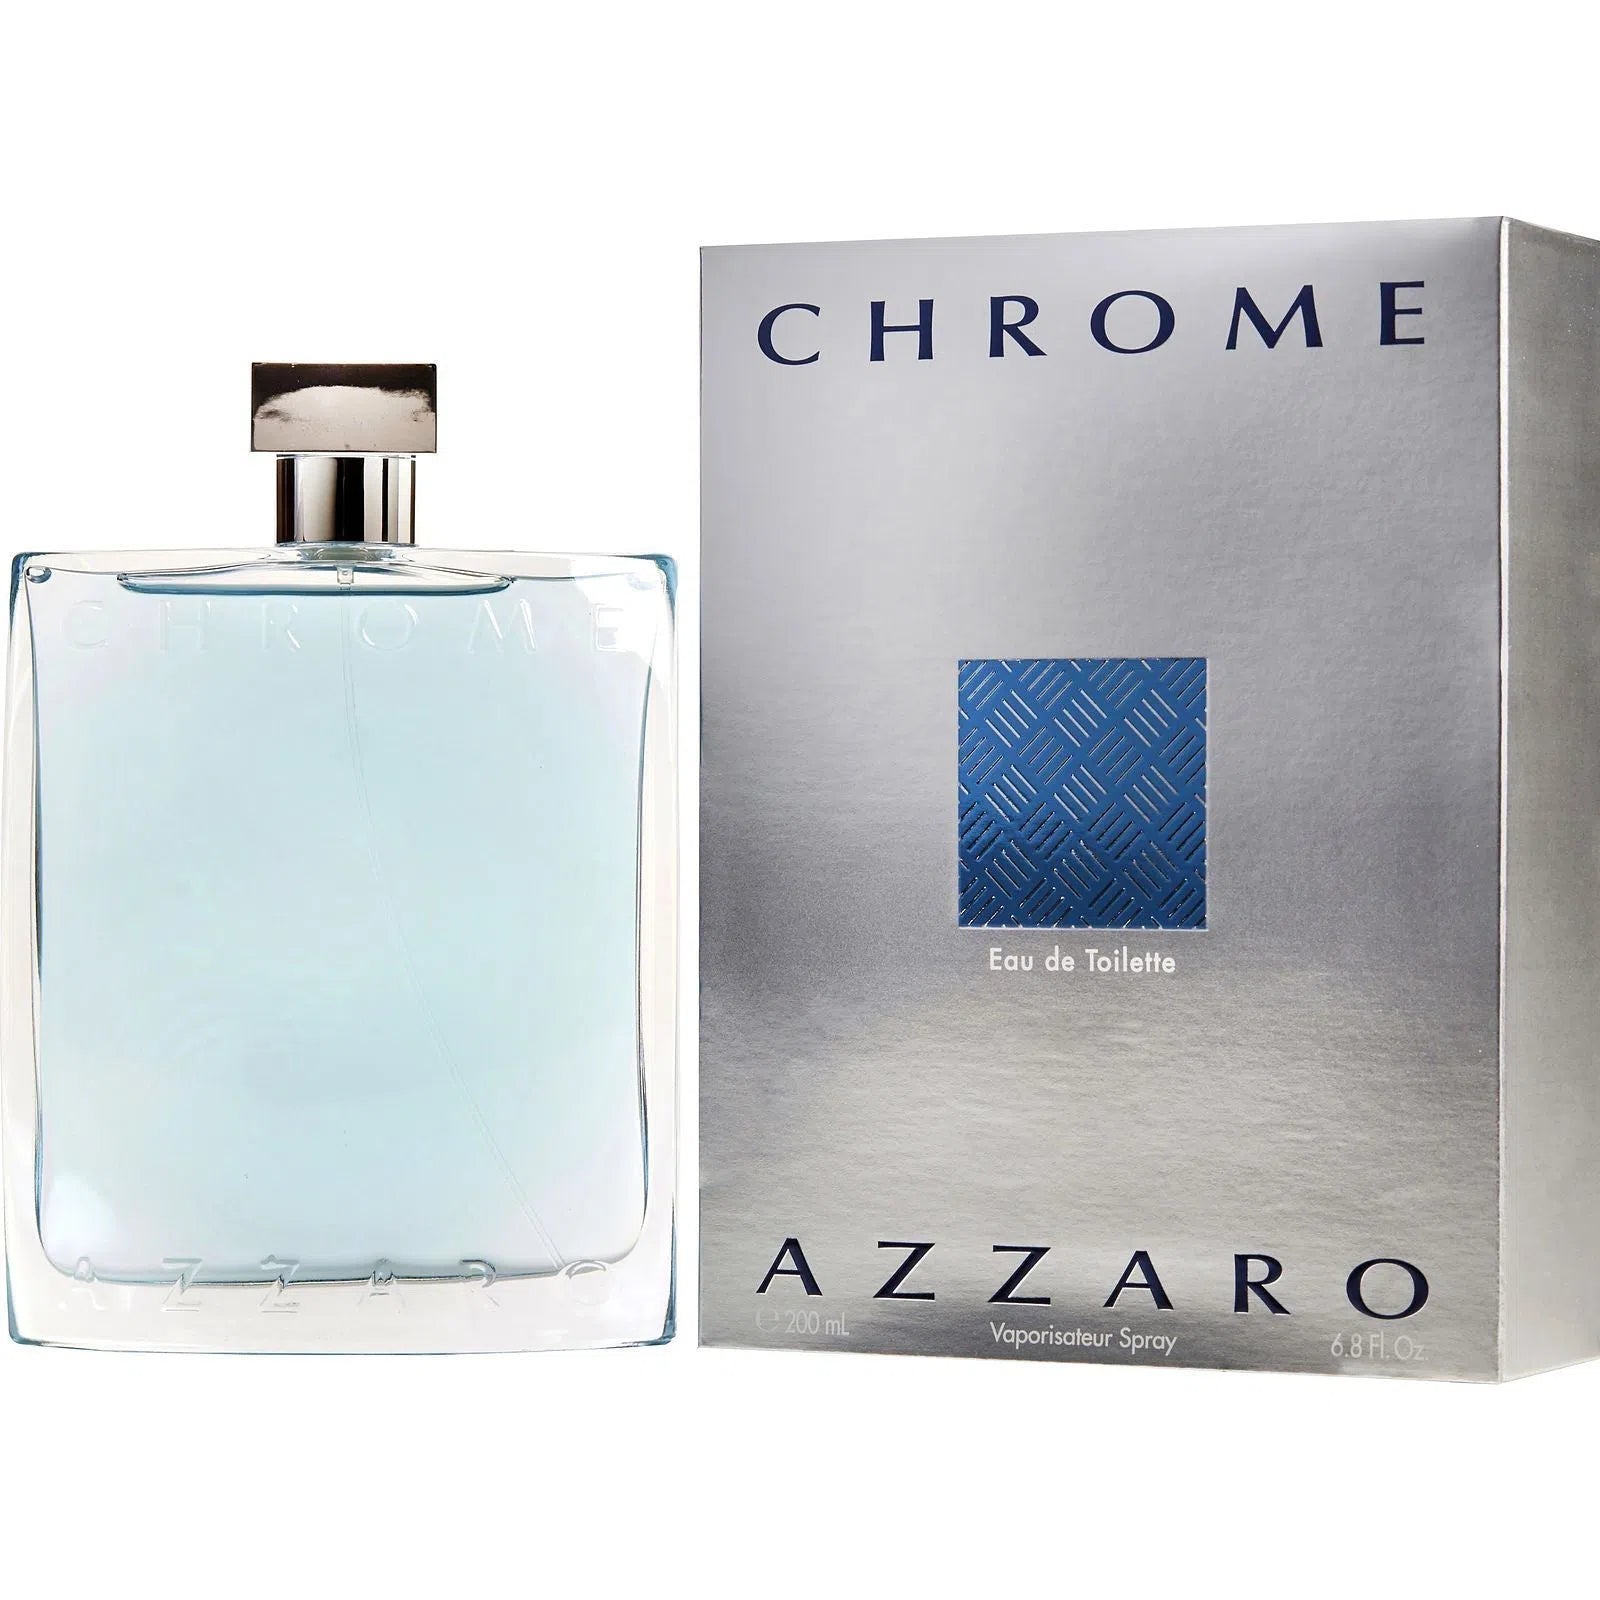 Perfume Azzaro Chrome EDT (M) / 200 ml - 3351500020416- Prive Perfumes Honduras